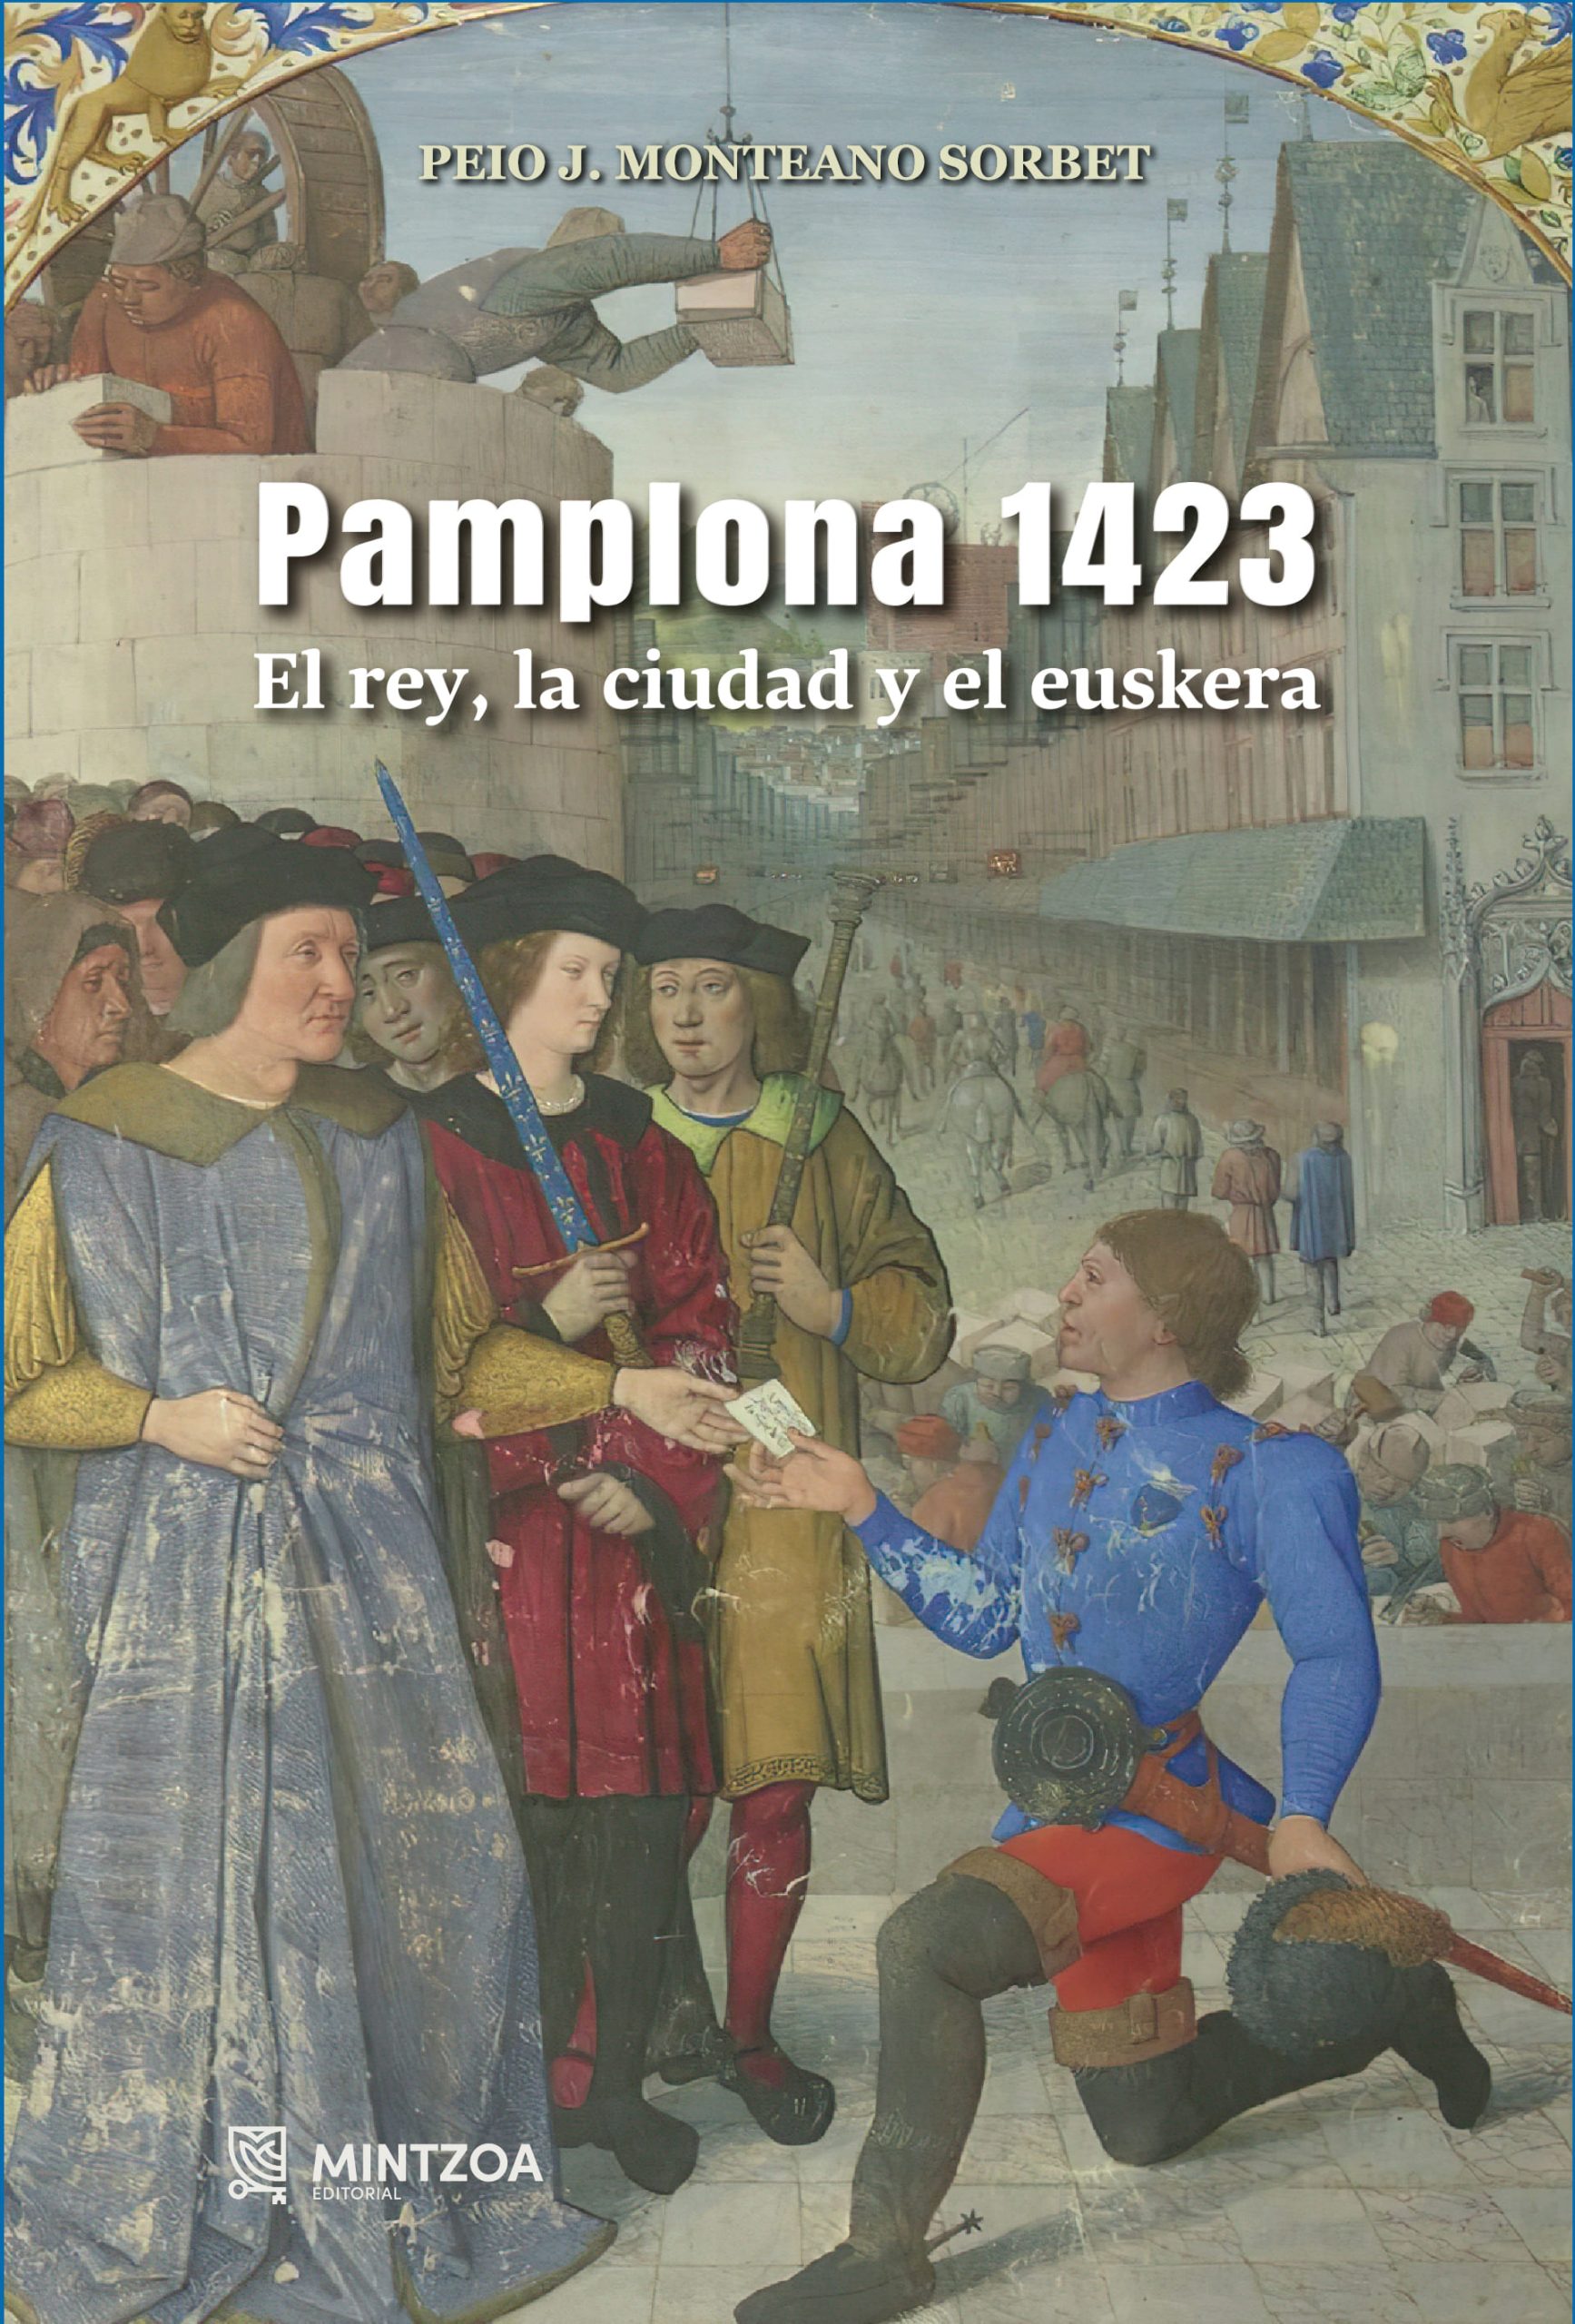 PAMPLONA 1423. El rey, la ciudad y el euskera.